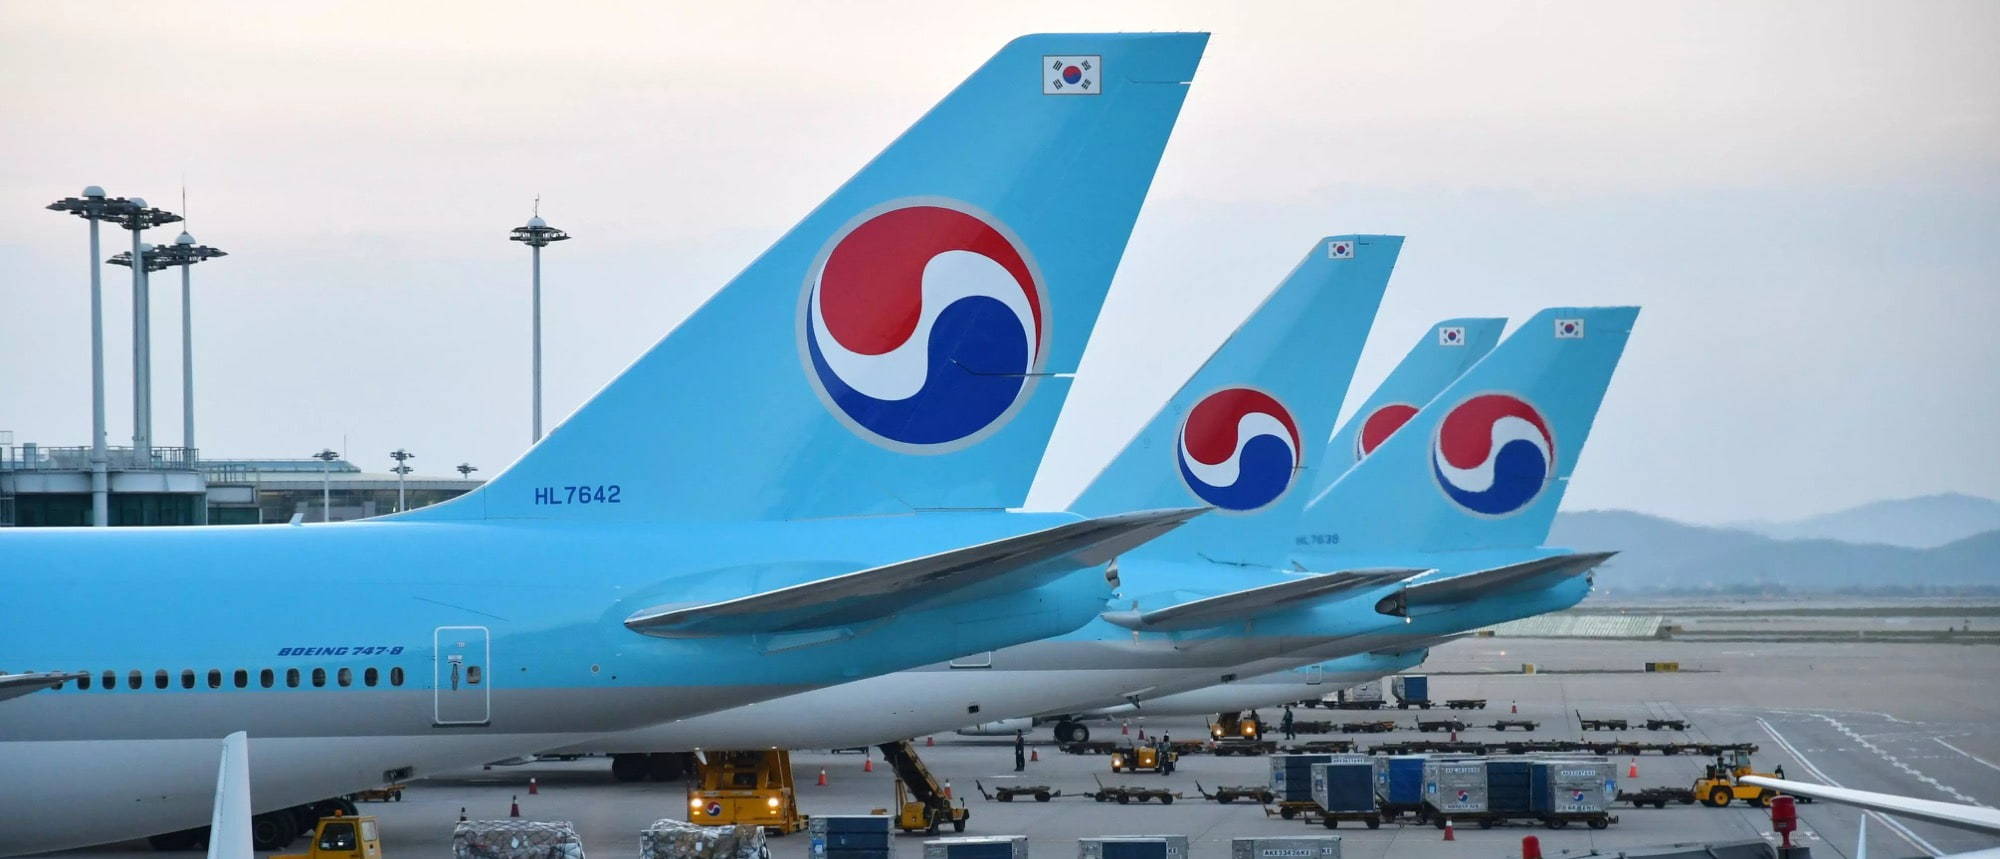 Korean Air Jobs | FAQ's | Boeing 747 Loading on Tarmac